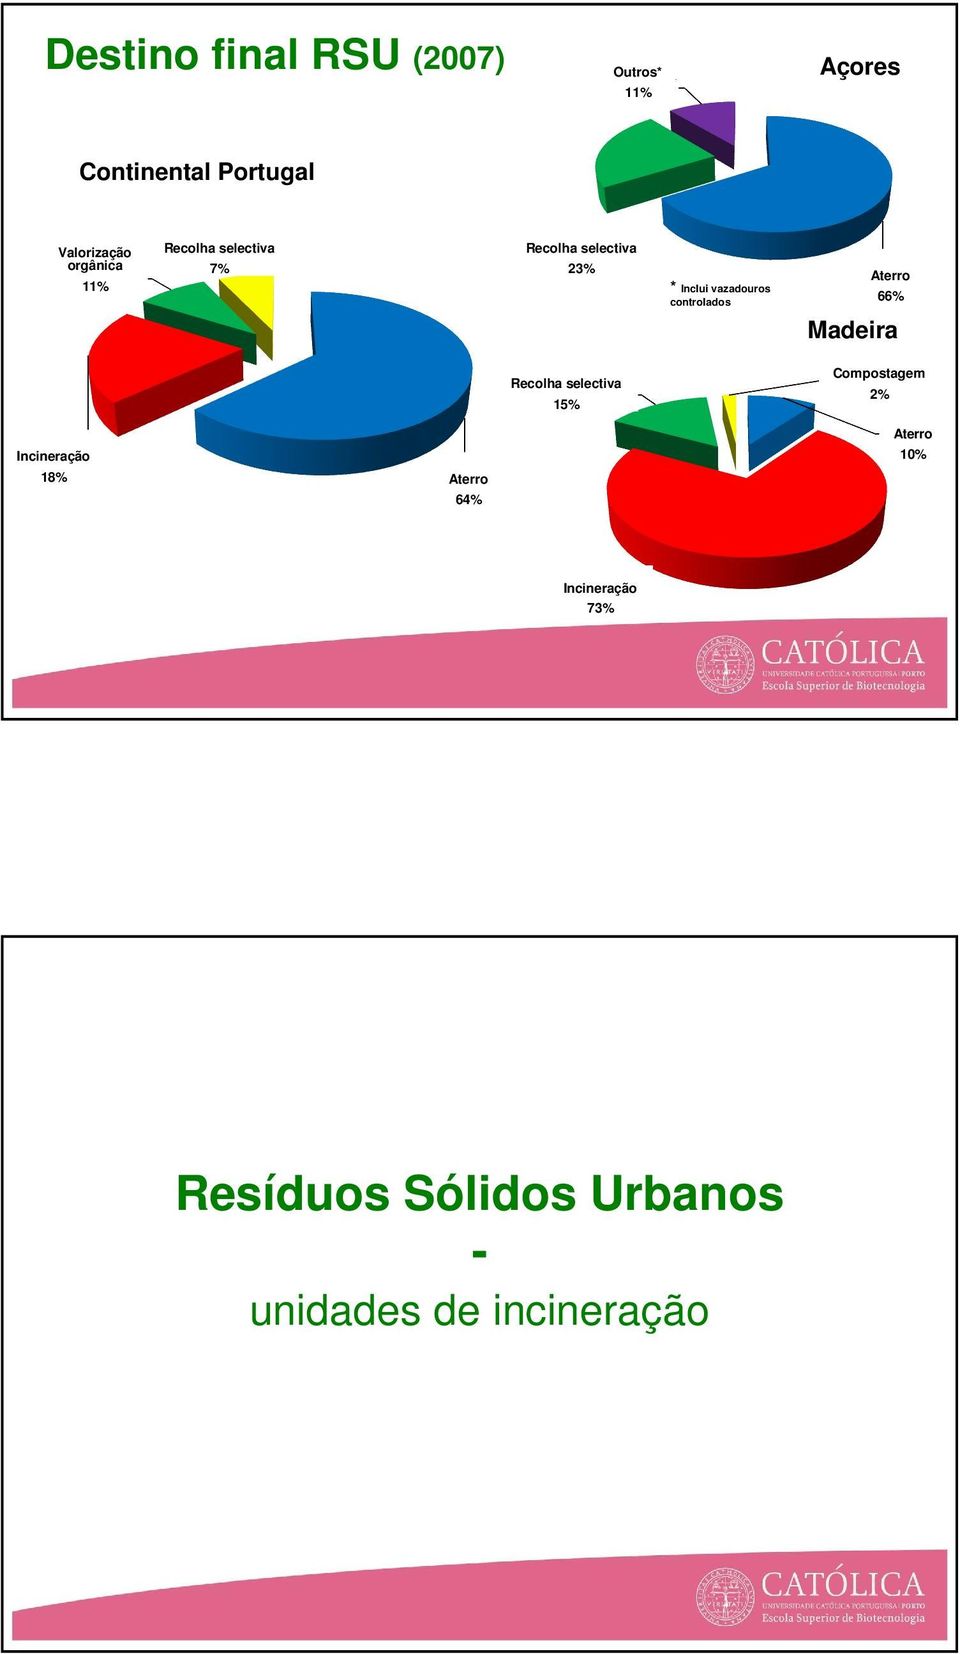 controlados Aterro 66% Madeira Recolha selectiva 15% Compostagem 2% Incineração